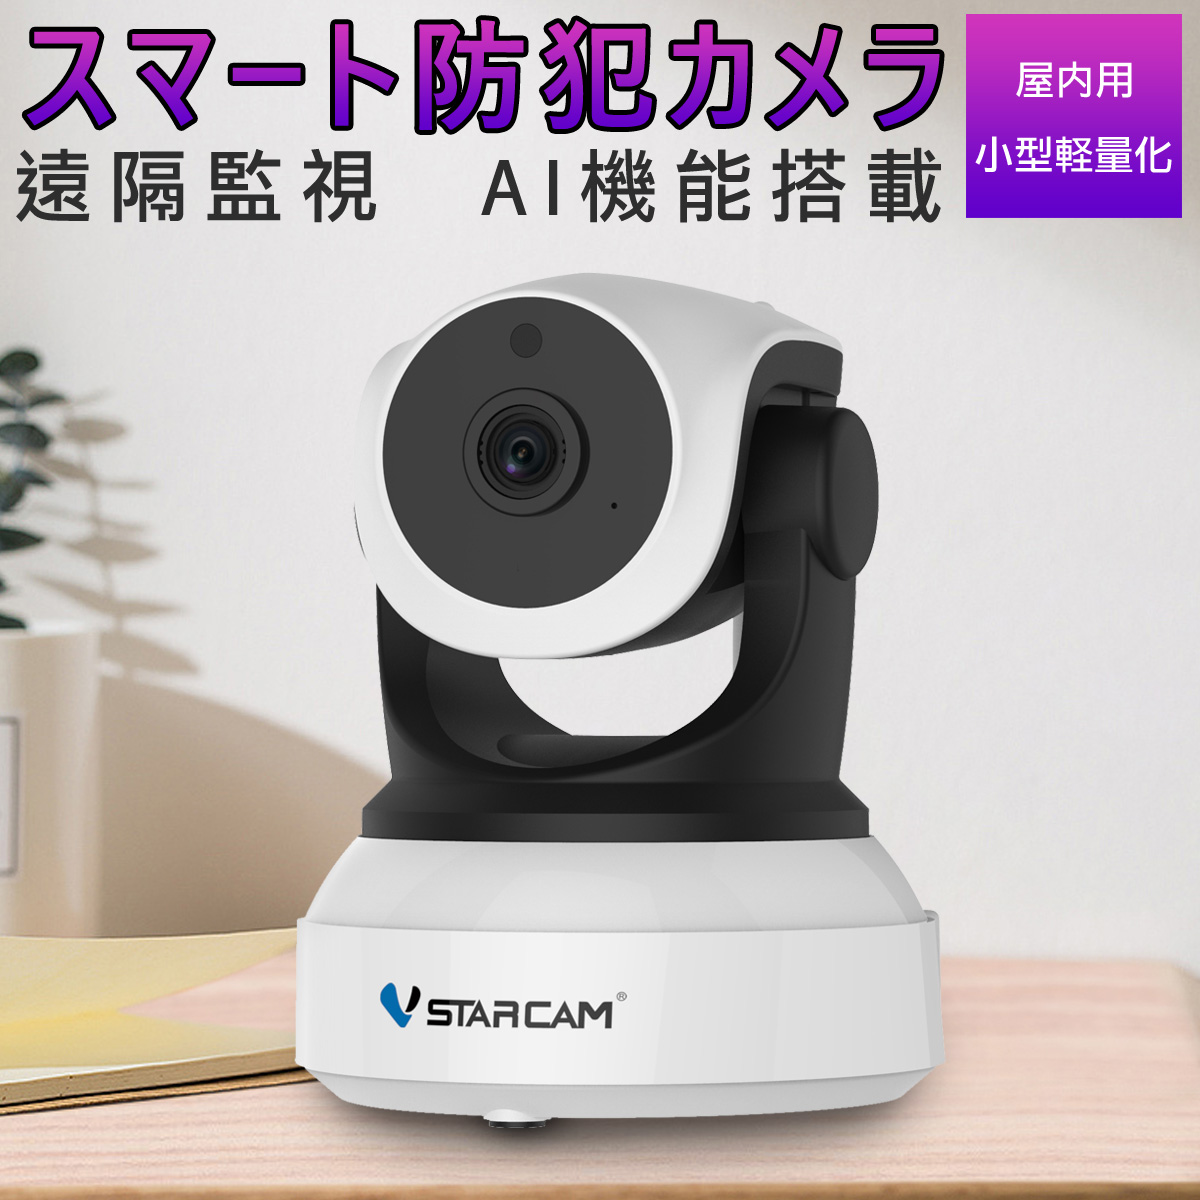 防犯カメラ ワイヤレス C24 VStarcam 100万画素 ONVIF対応 AI機能搭載 wifi 無線 人型フレーミング 人体追跡 人体検知 動体検知 MicroSDカード録画 録音 遠隔監視 赤ちゃん 子供 ペット 屋内用 IP カメラ PSE 技適 6ヶ月保証